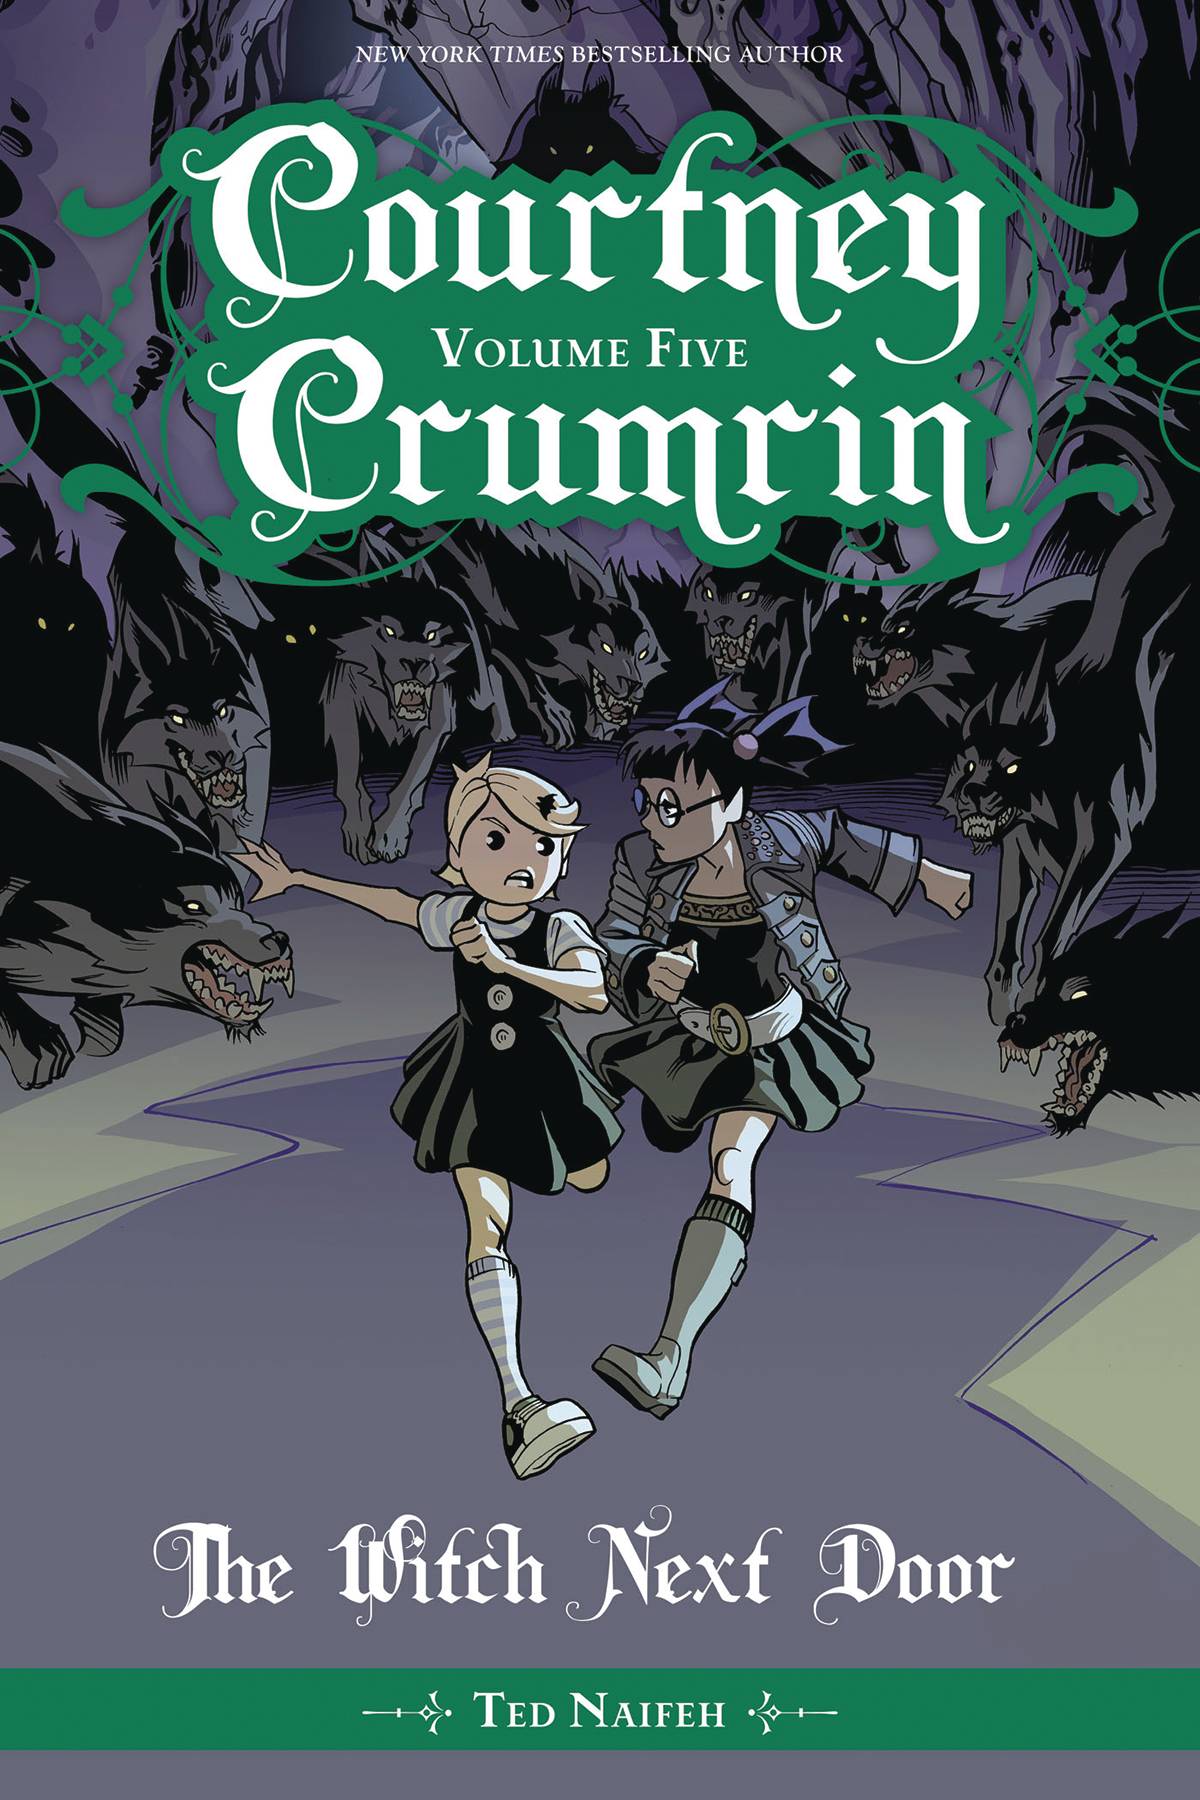 Courtney Crumrin Graphic Novel Volume 5 Witch Next Door